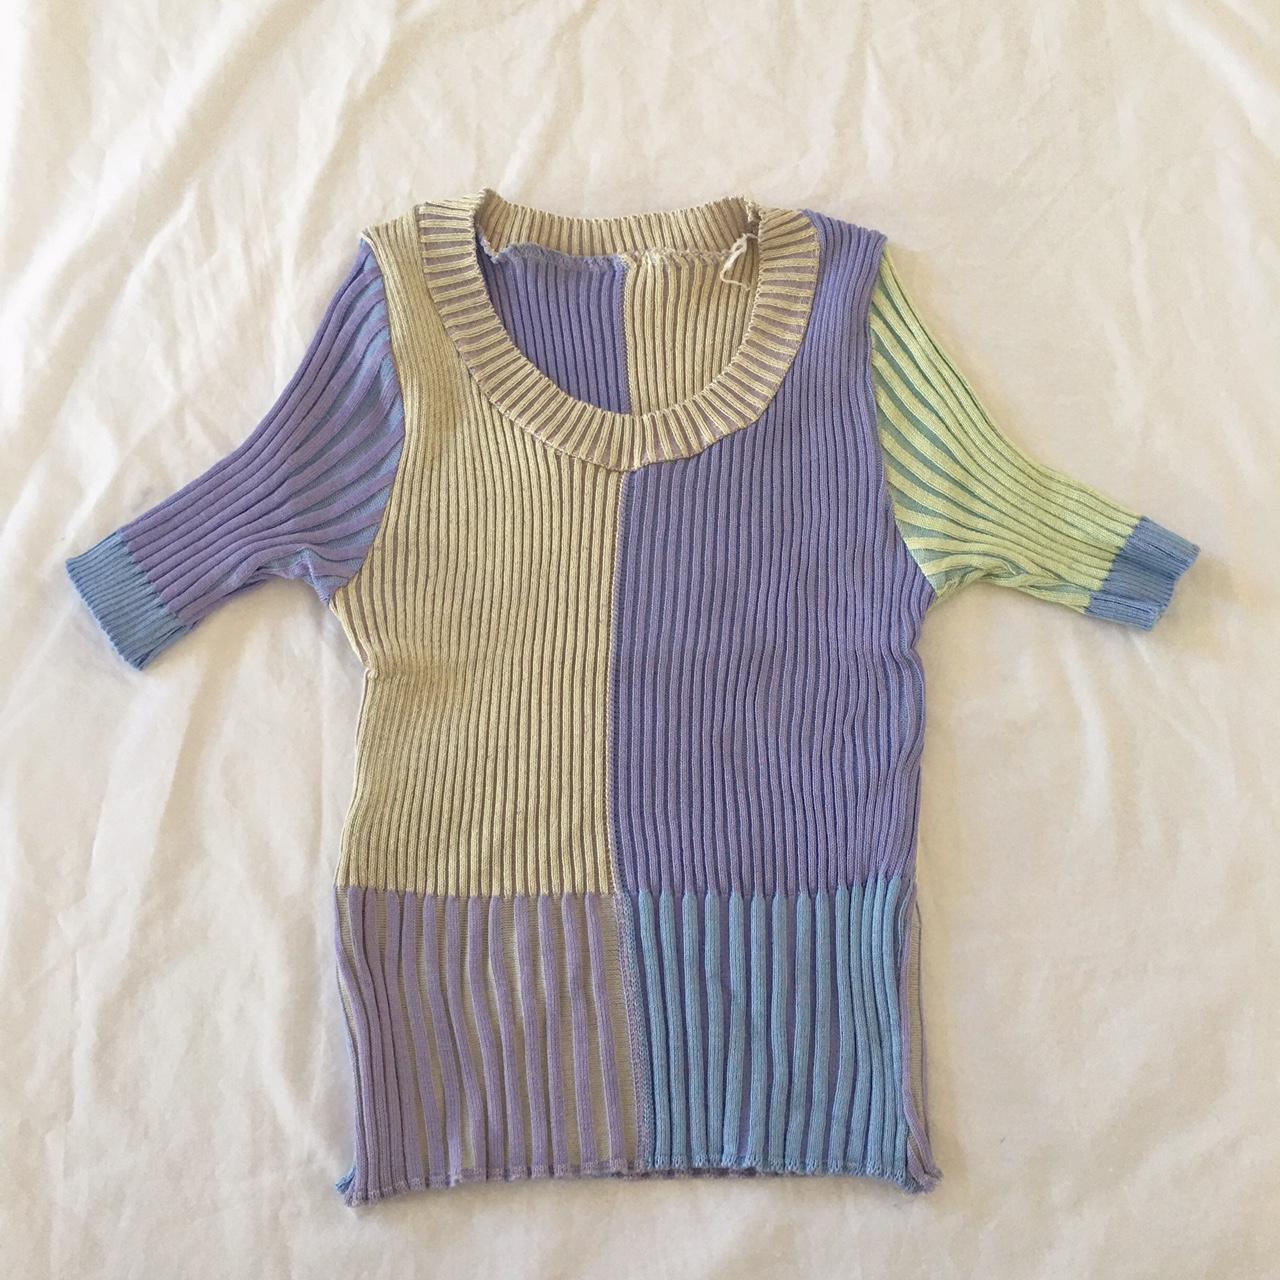 Knitted crop tops shirt Brand new #trendy #kawaii... - Depop